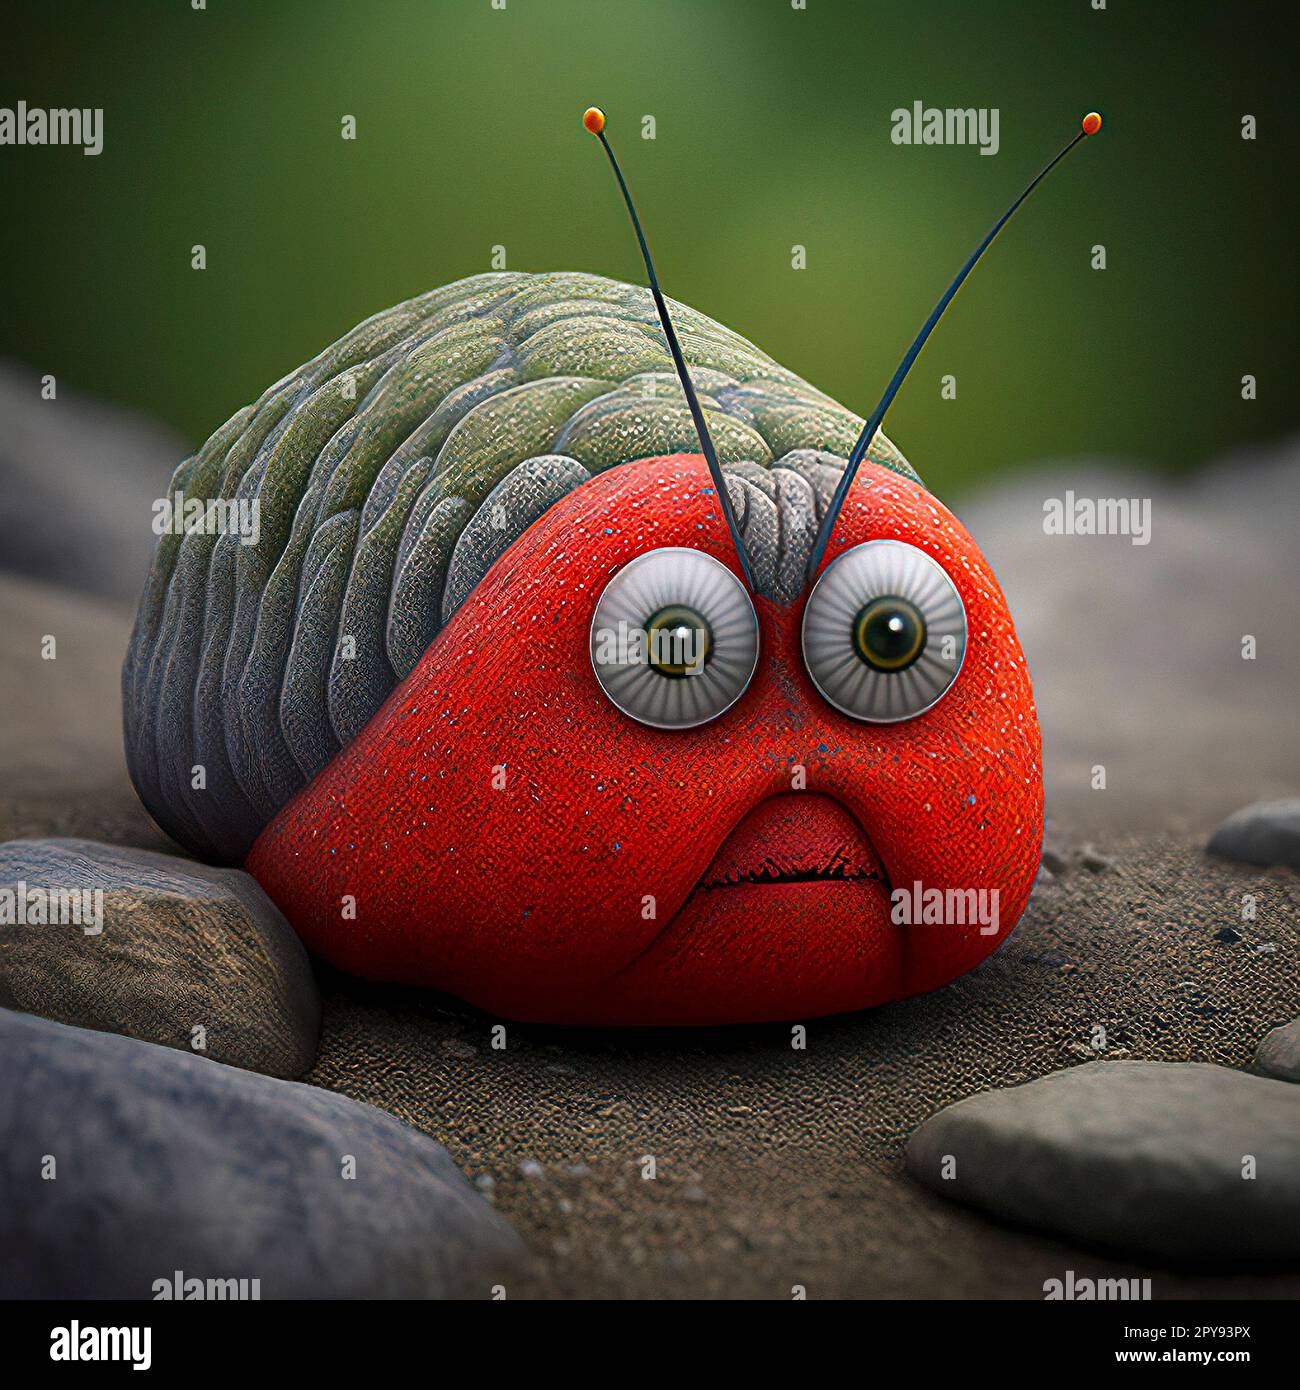 Eine Digital-Art-Darstellung eines süßen Käfers mit großen Augen, empfindlichen Antennen und weicher, unscharfer Textur hat einen komischen, wütenden Ausdruck Stockfoto